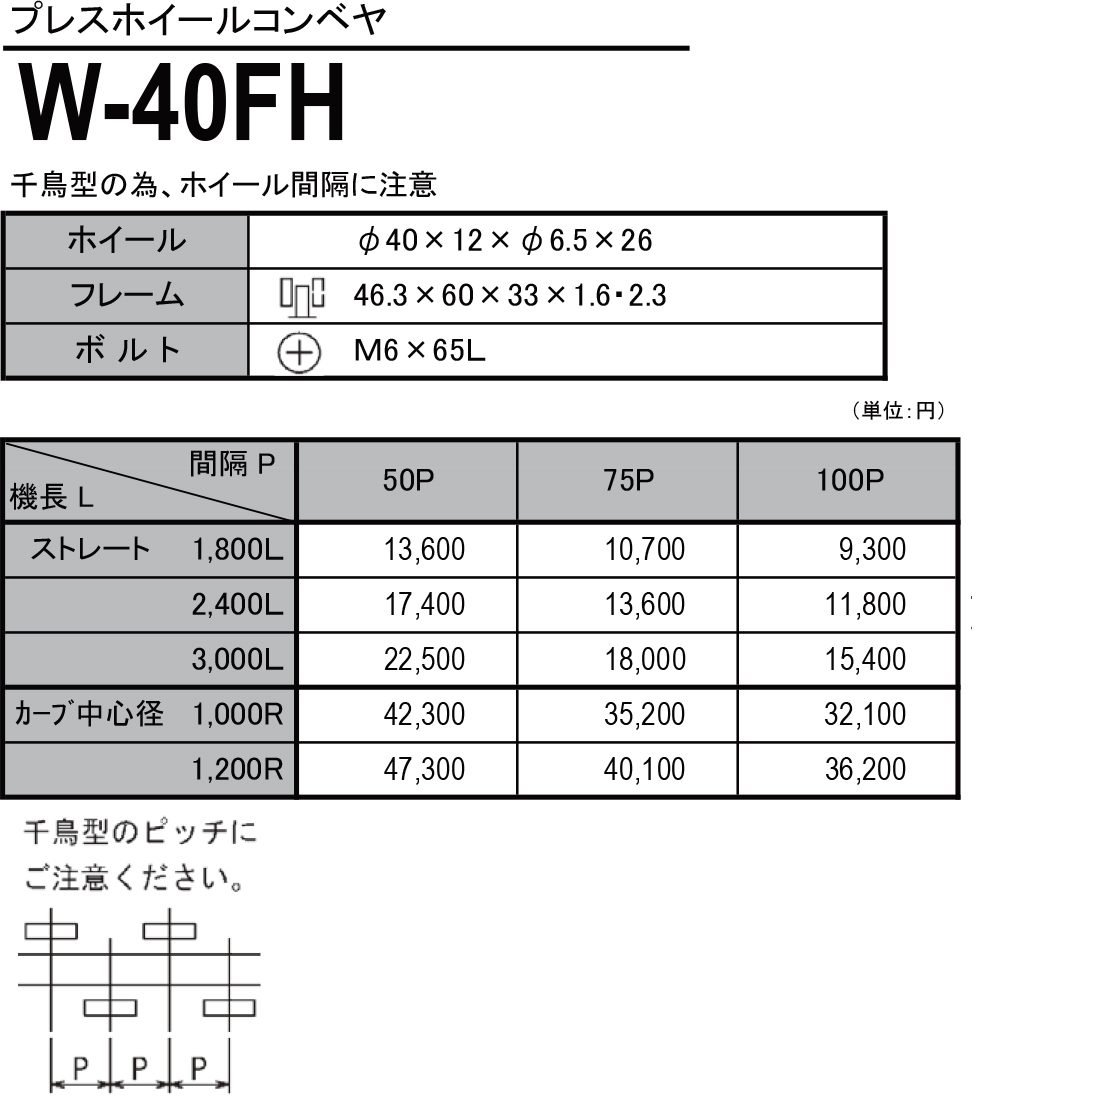 W-40FH　プレスホイールコンベヤ(スチール製）　ホイールコンベヤ　価格表